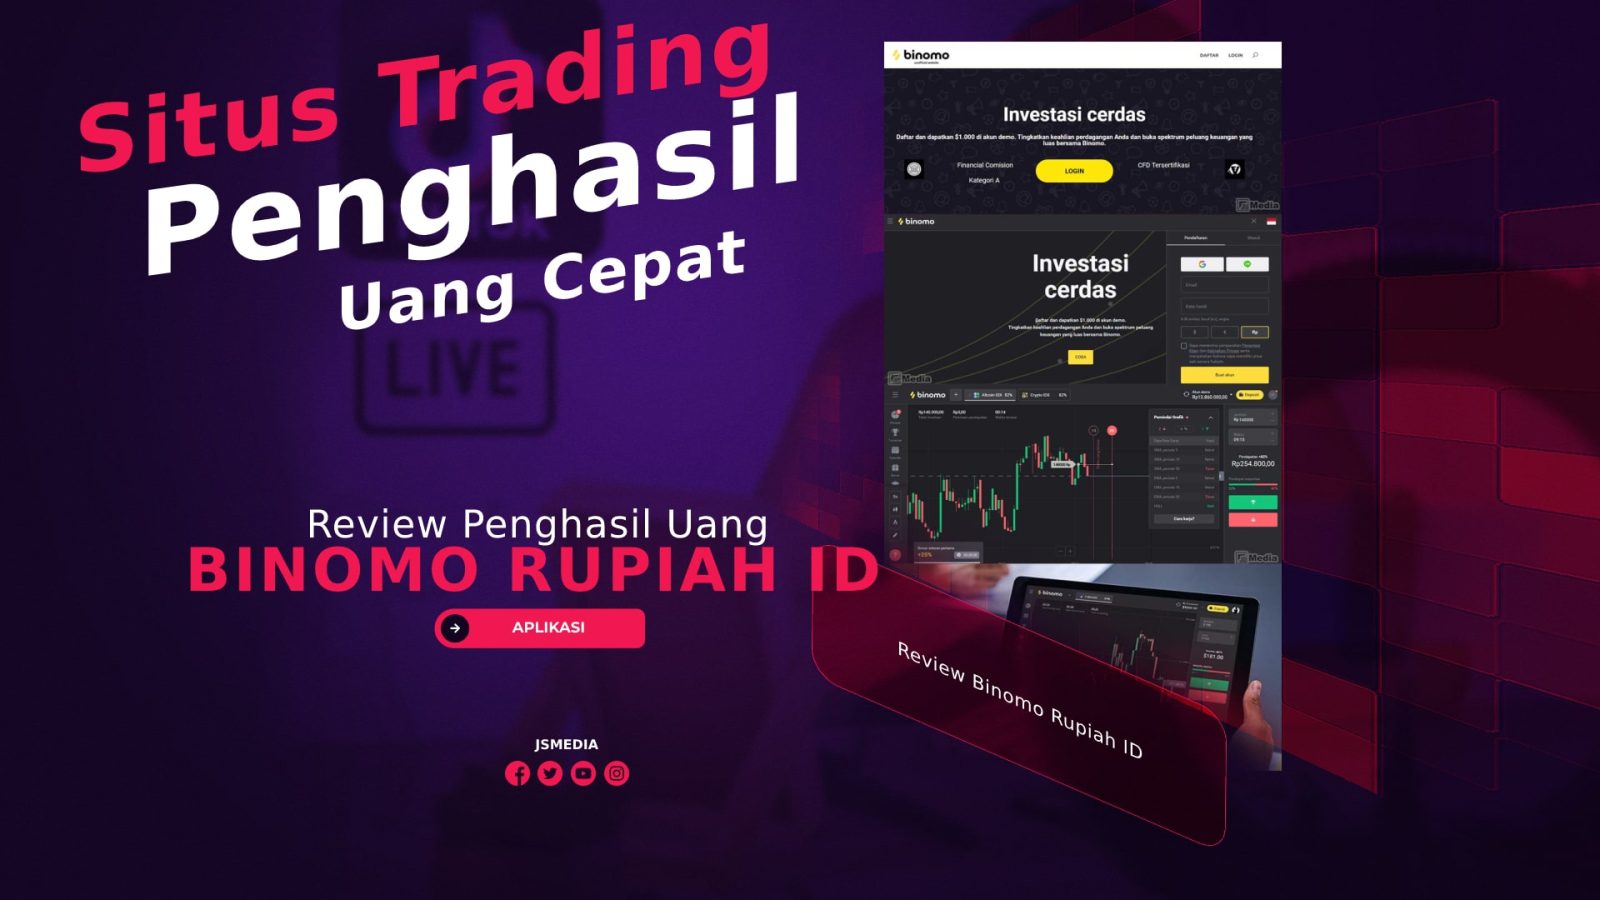 Review Binomo Rupiah ID, Situs Trading Penghasil Uang?